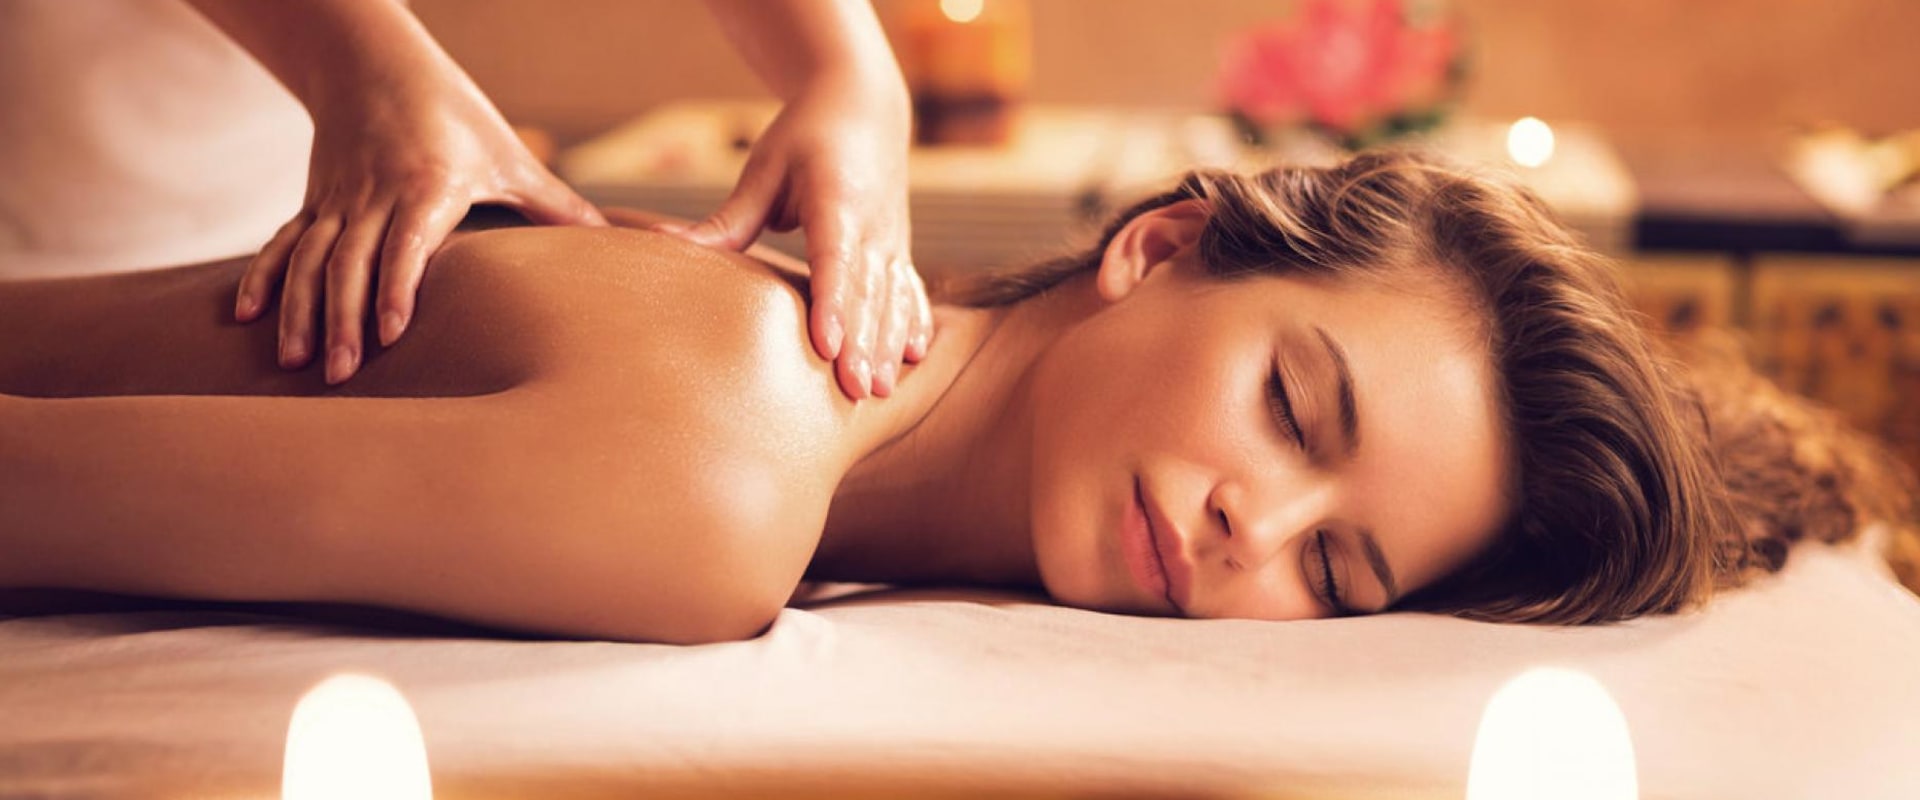 Müssen Sie bei einer Thai-Massage nackt sein?